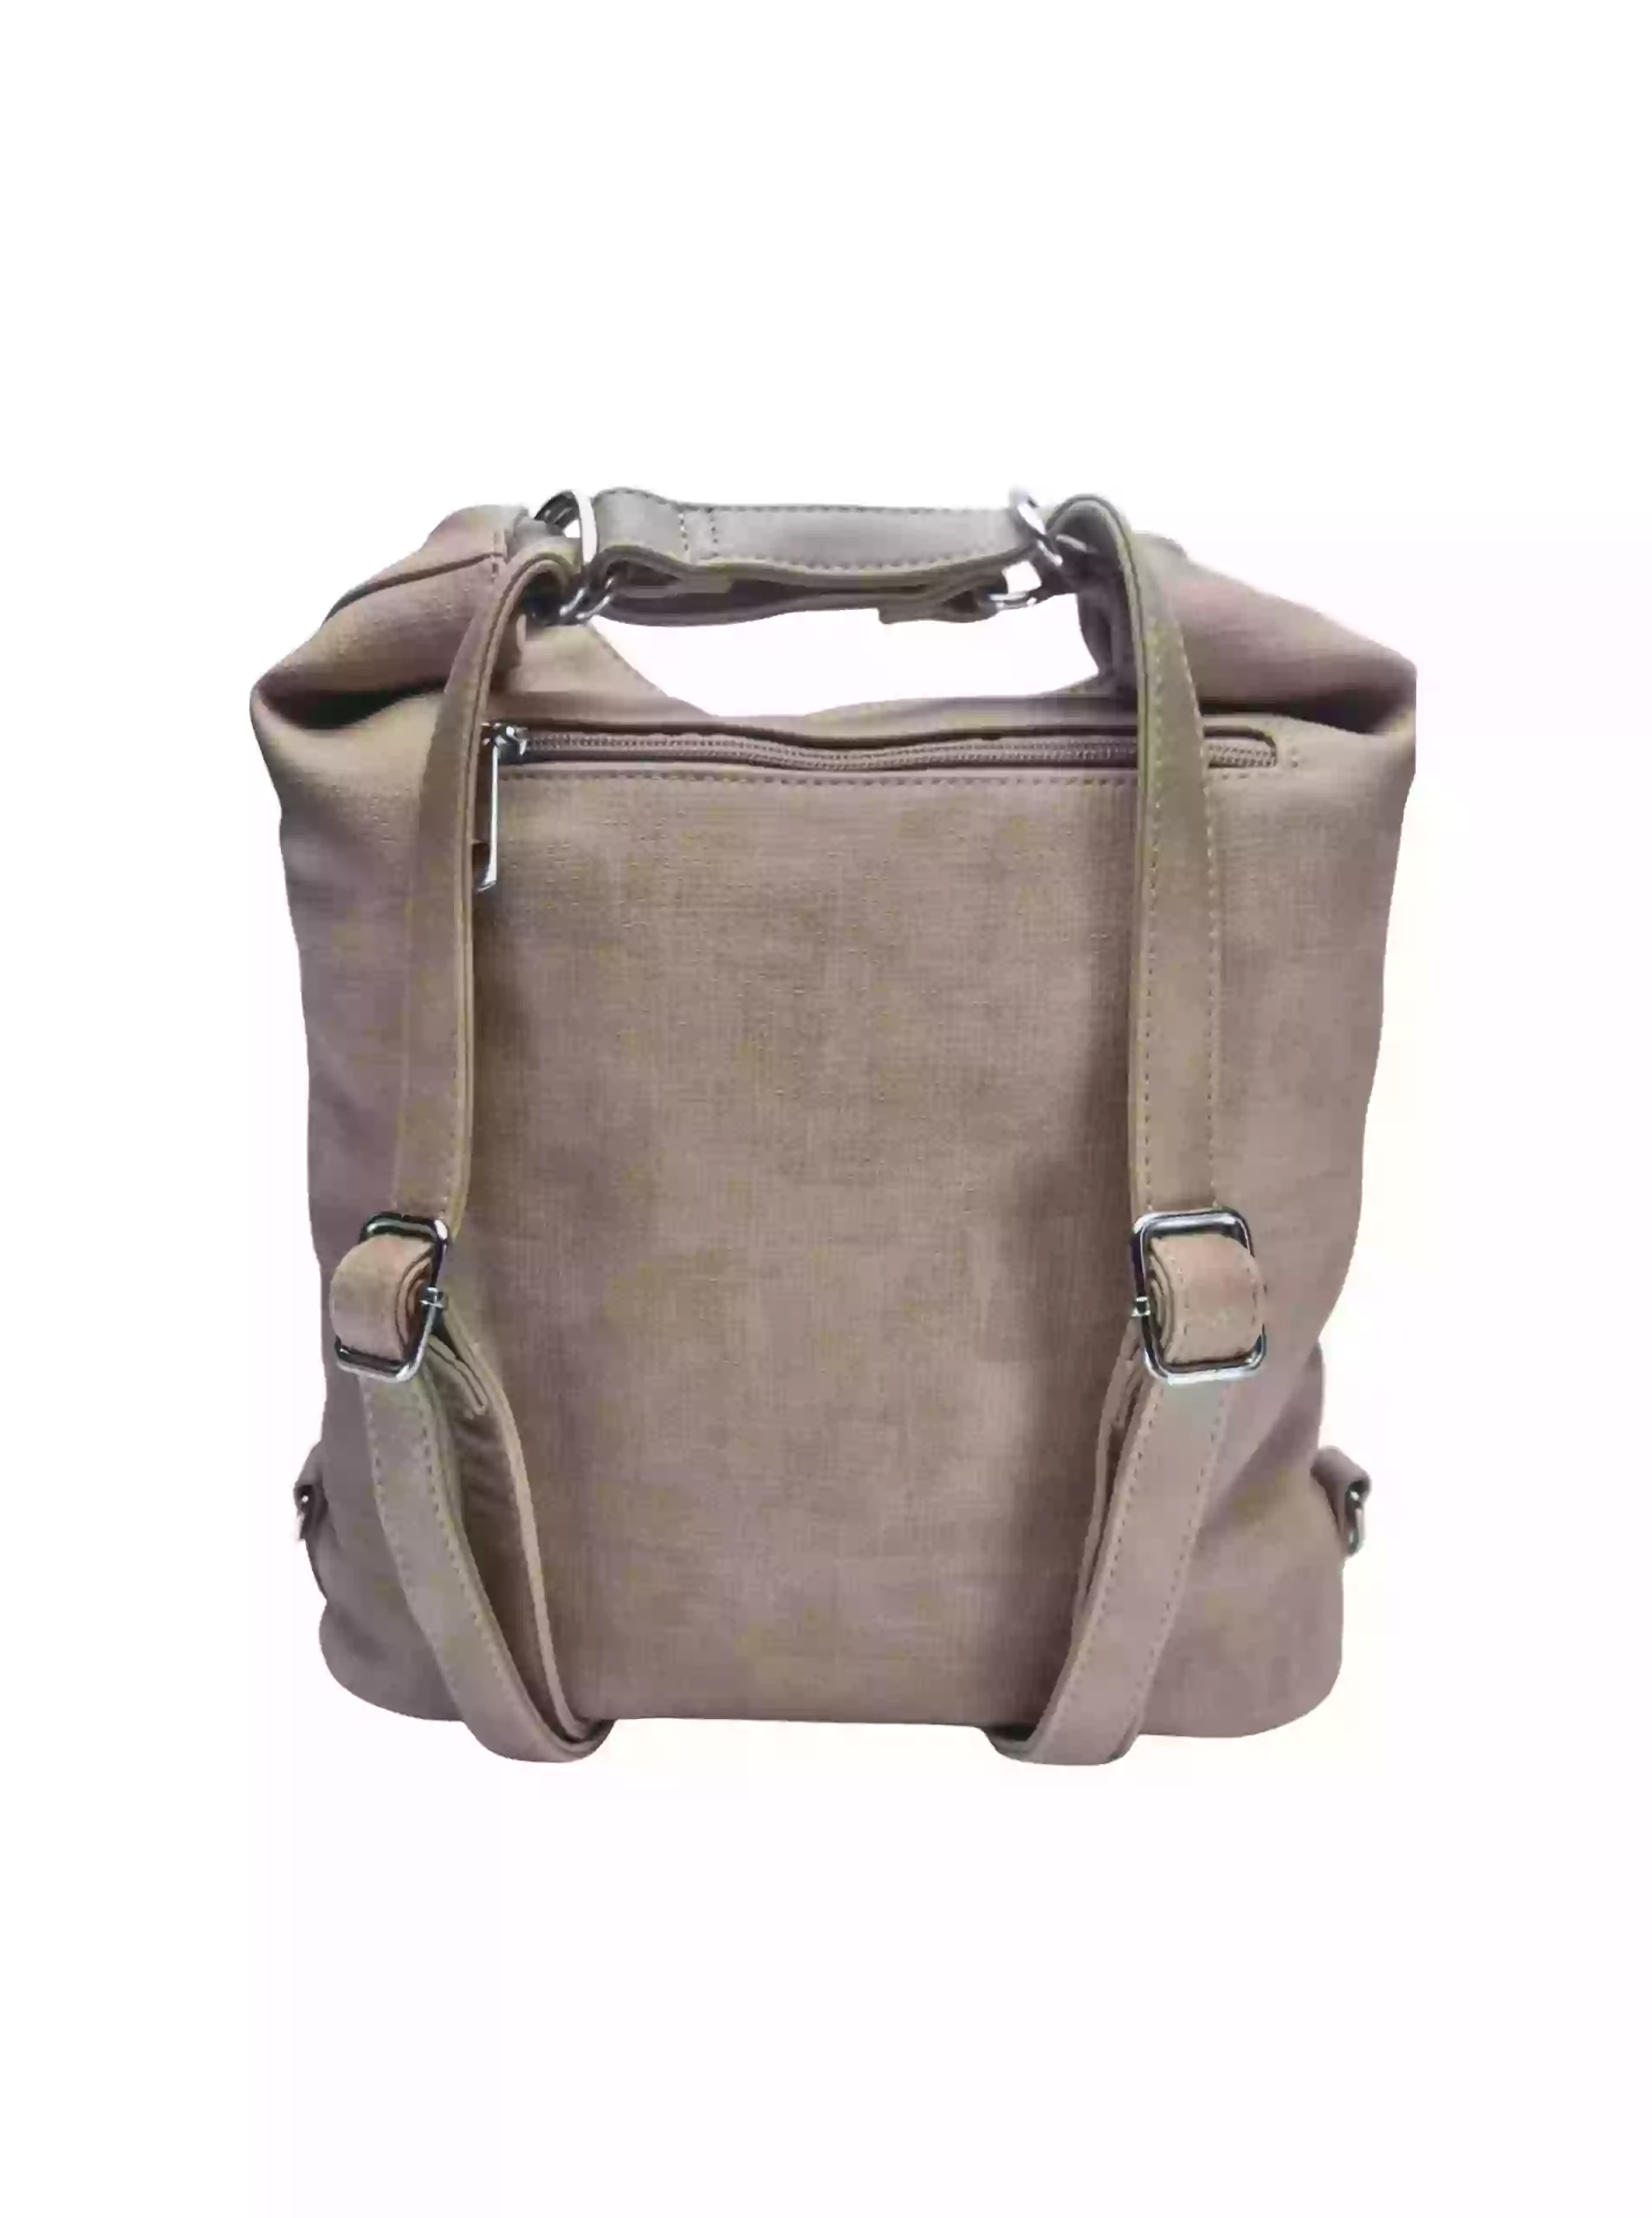 Střední světle hnědý kabelko-batoh 2v1 s praktickou kapsou, Tapple, H190062, zadní strana kabelko-batohu s popruhy